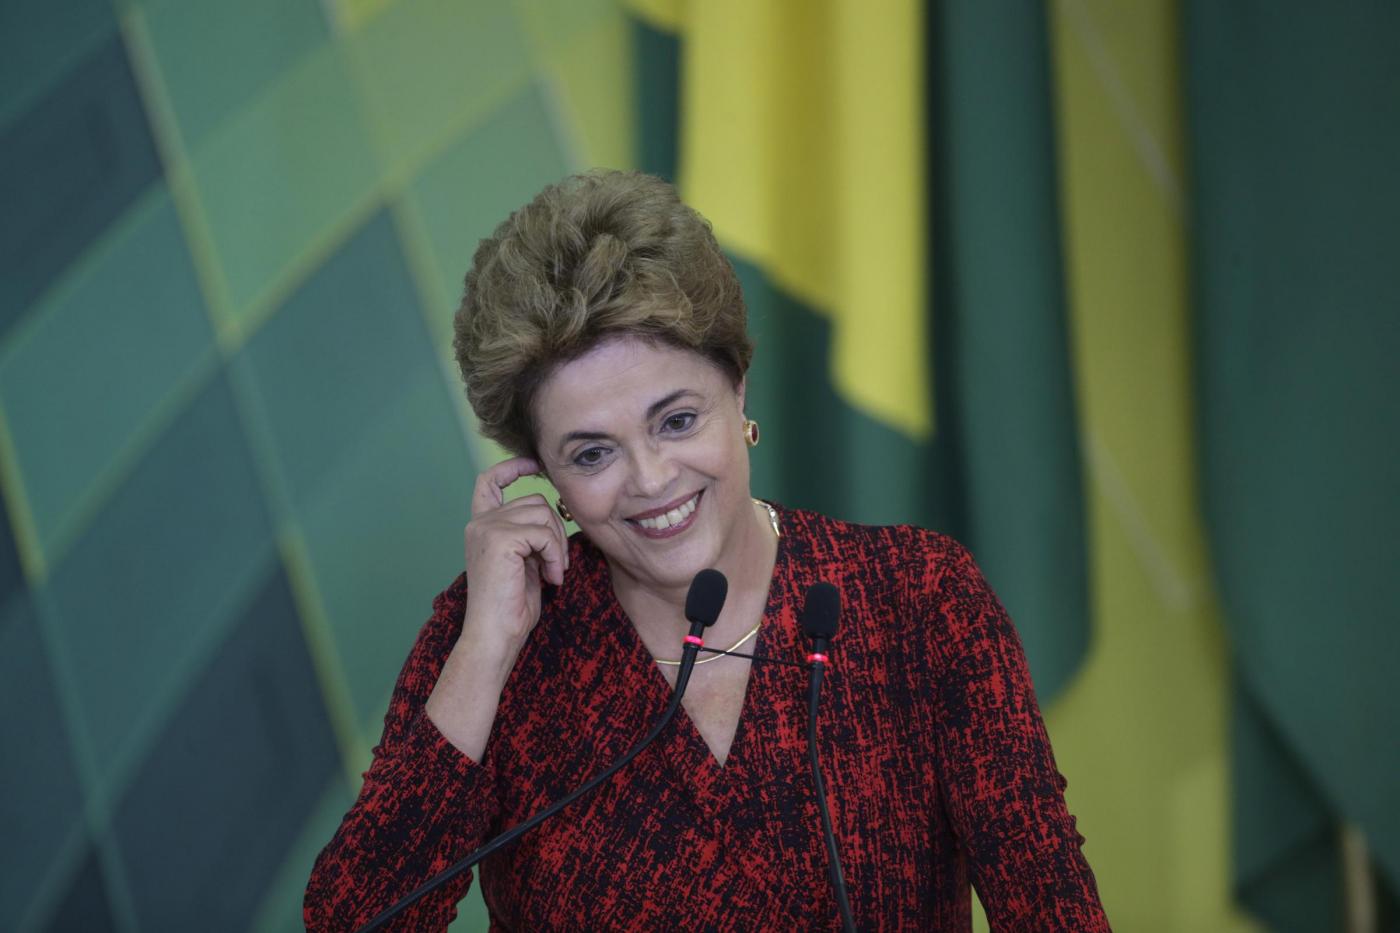 Sostenitori Rousseff al Planalto dopo stop impeachment